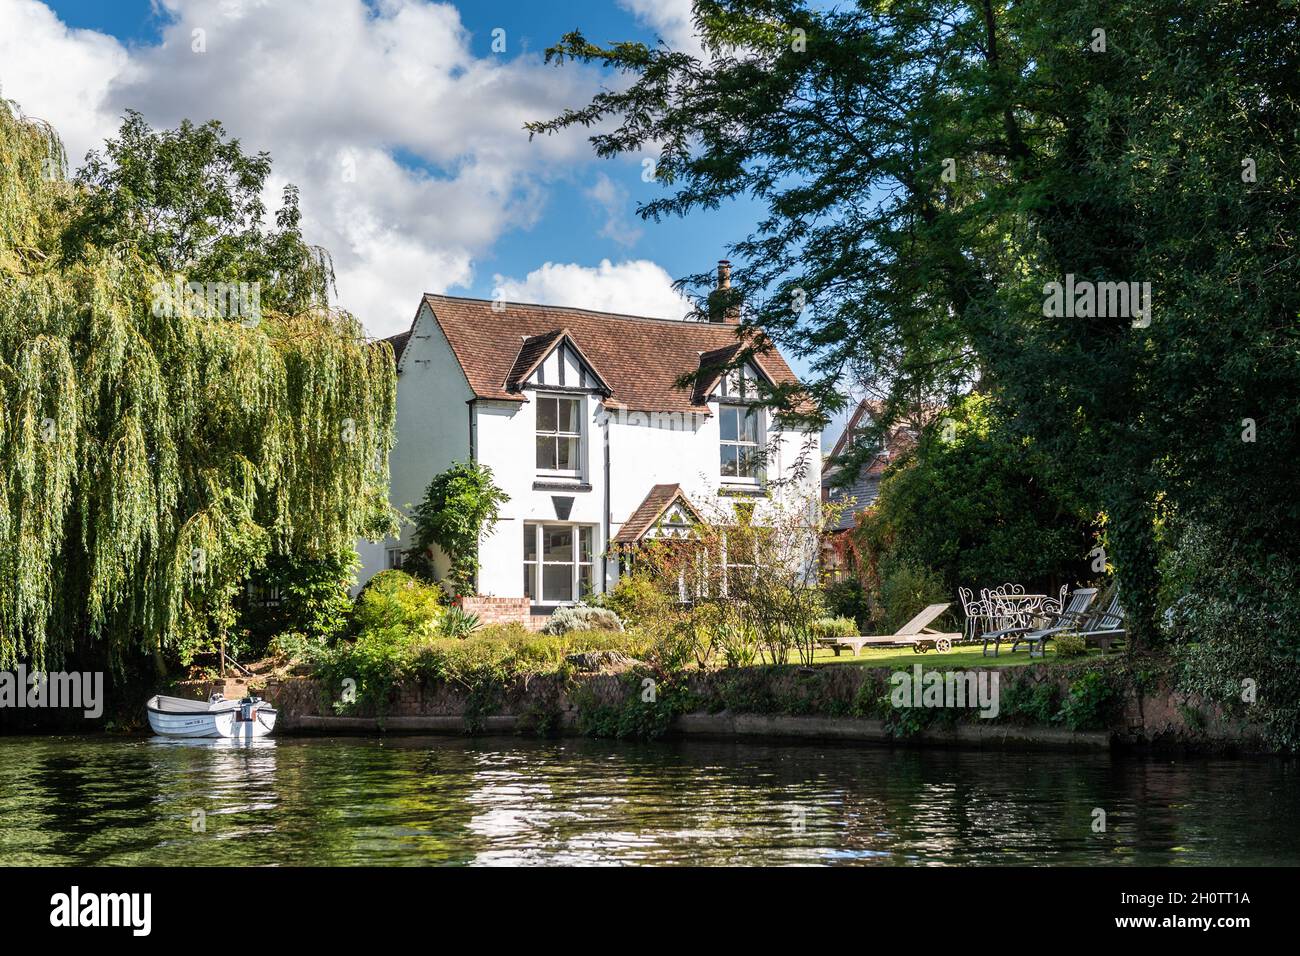 Maison et bateau à moteur sur la rivière Avon, Stratford-upon-Avon, Warwickshire, Royaume-Uni. Banque D'Images